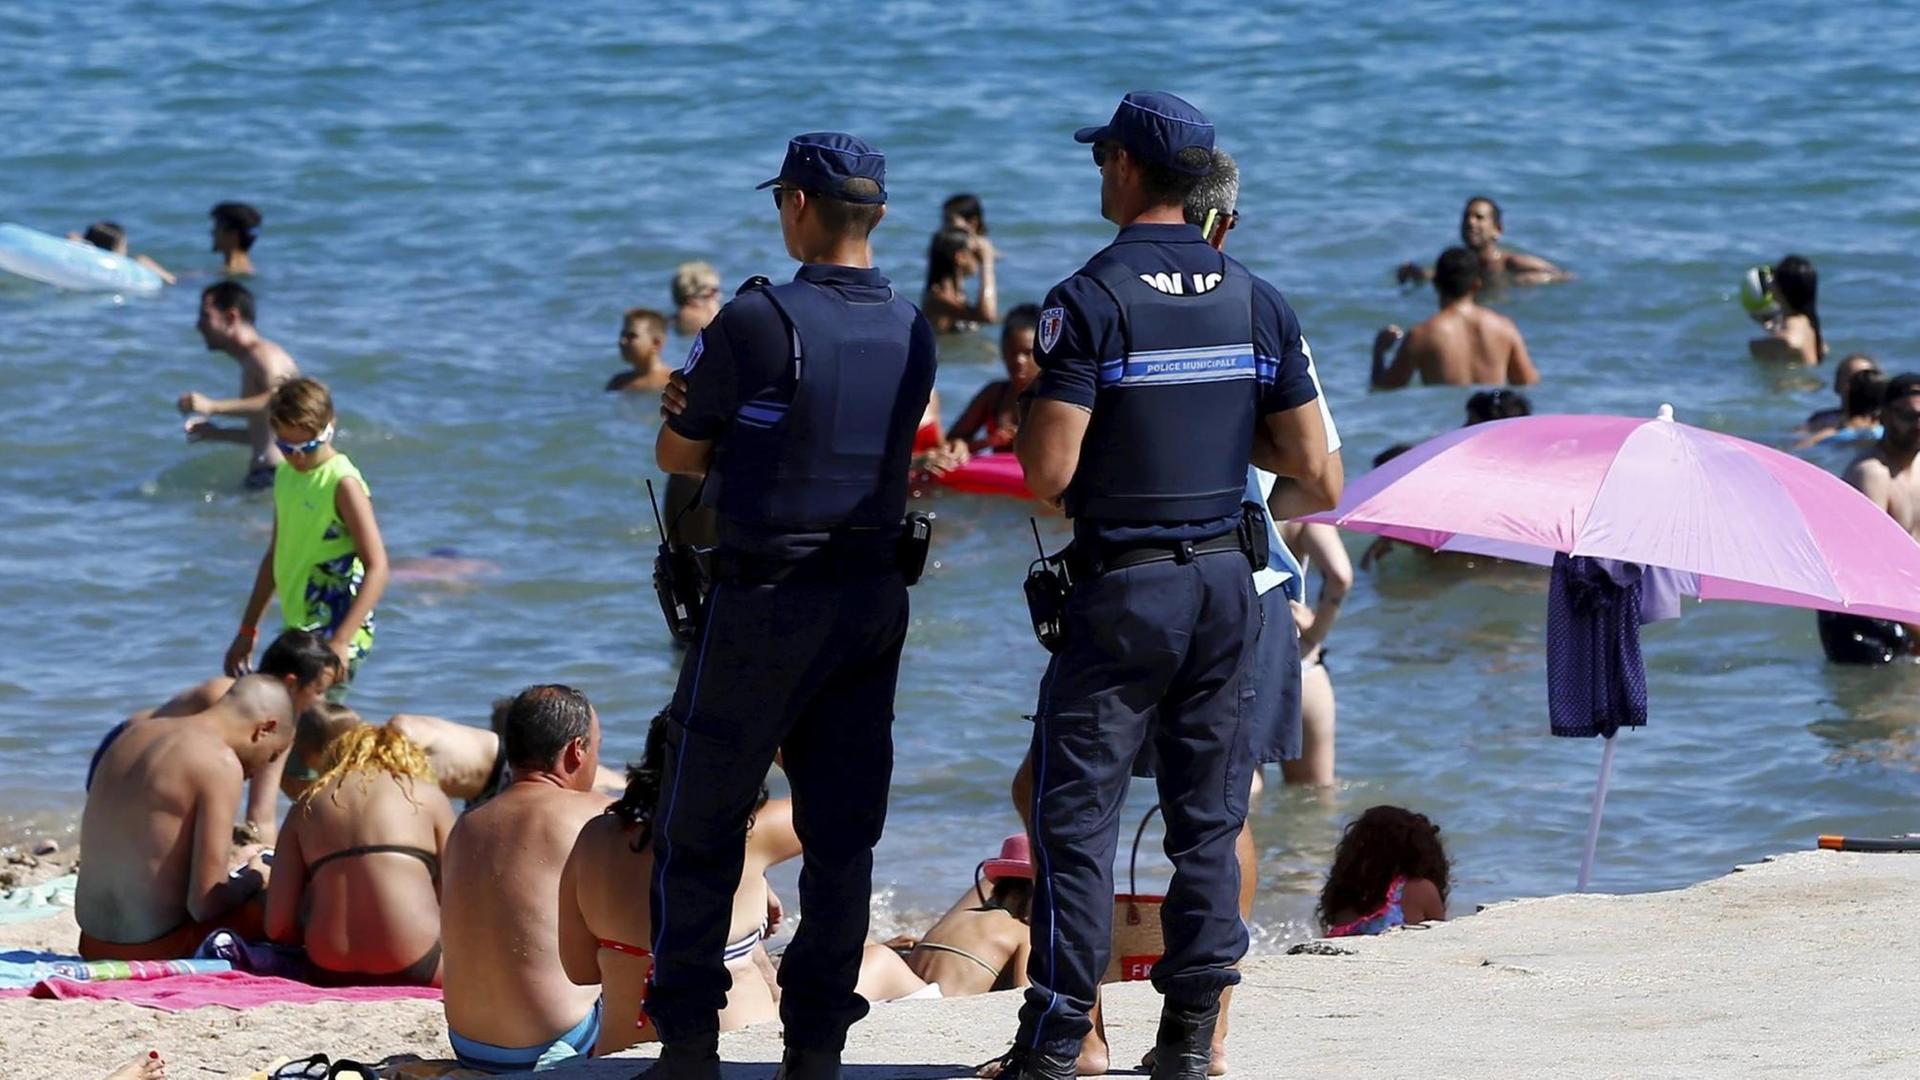 Frankreichs Polizei kontrolliert am Strand ob die Frauen Burkinis tragen.